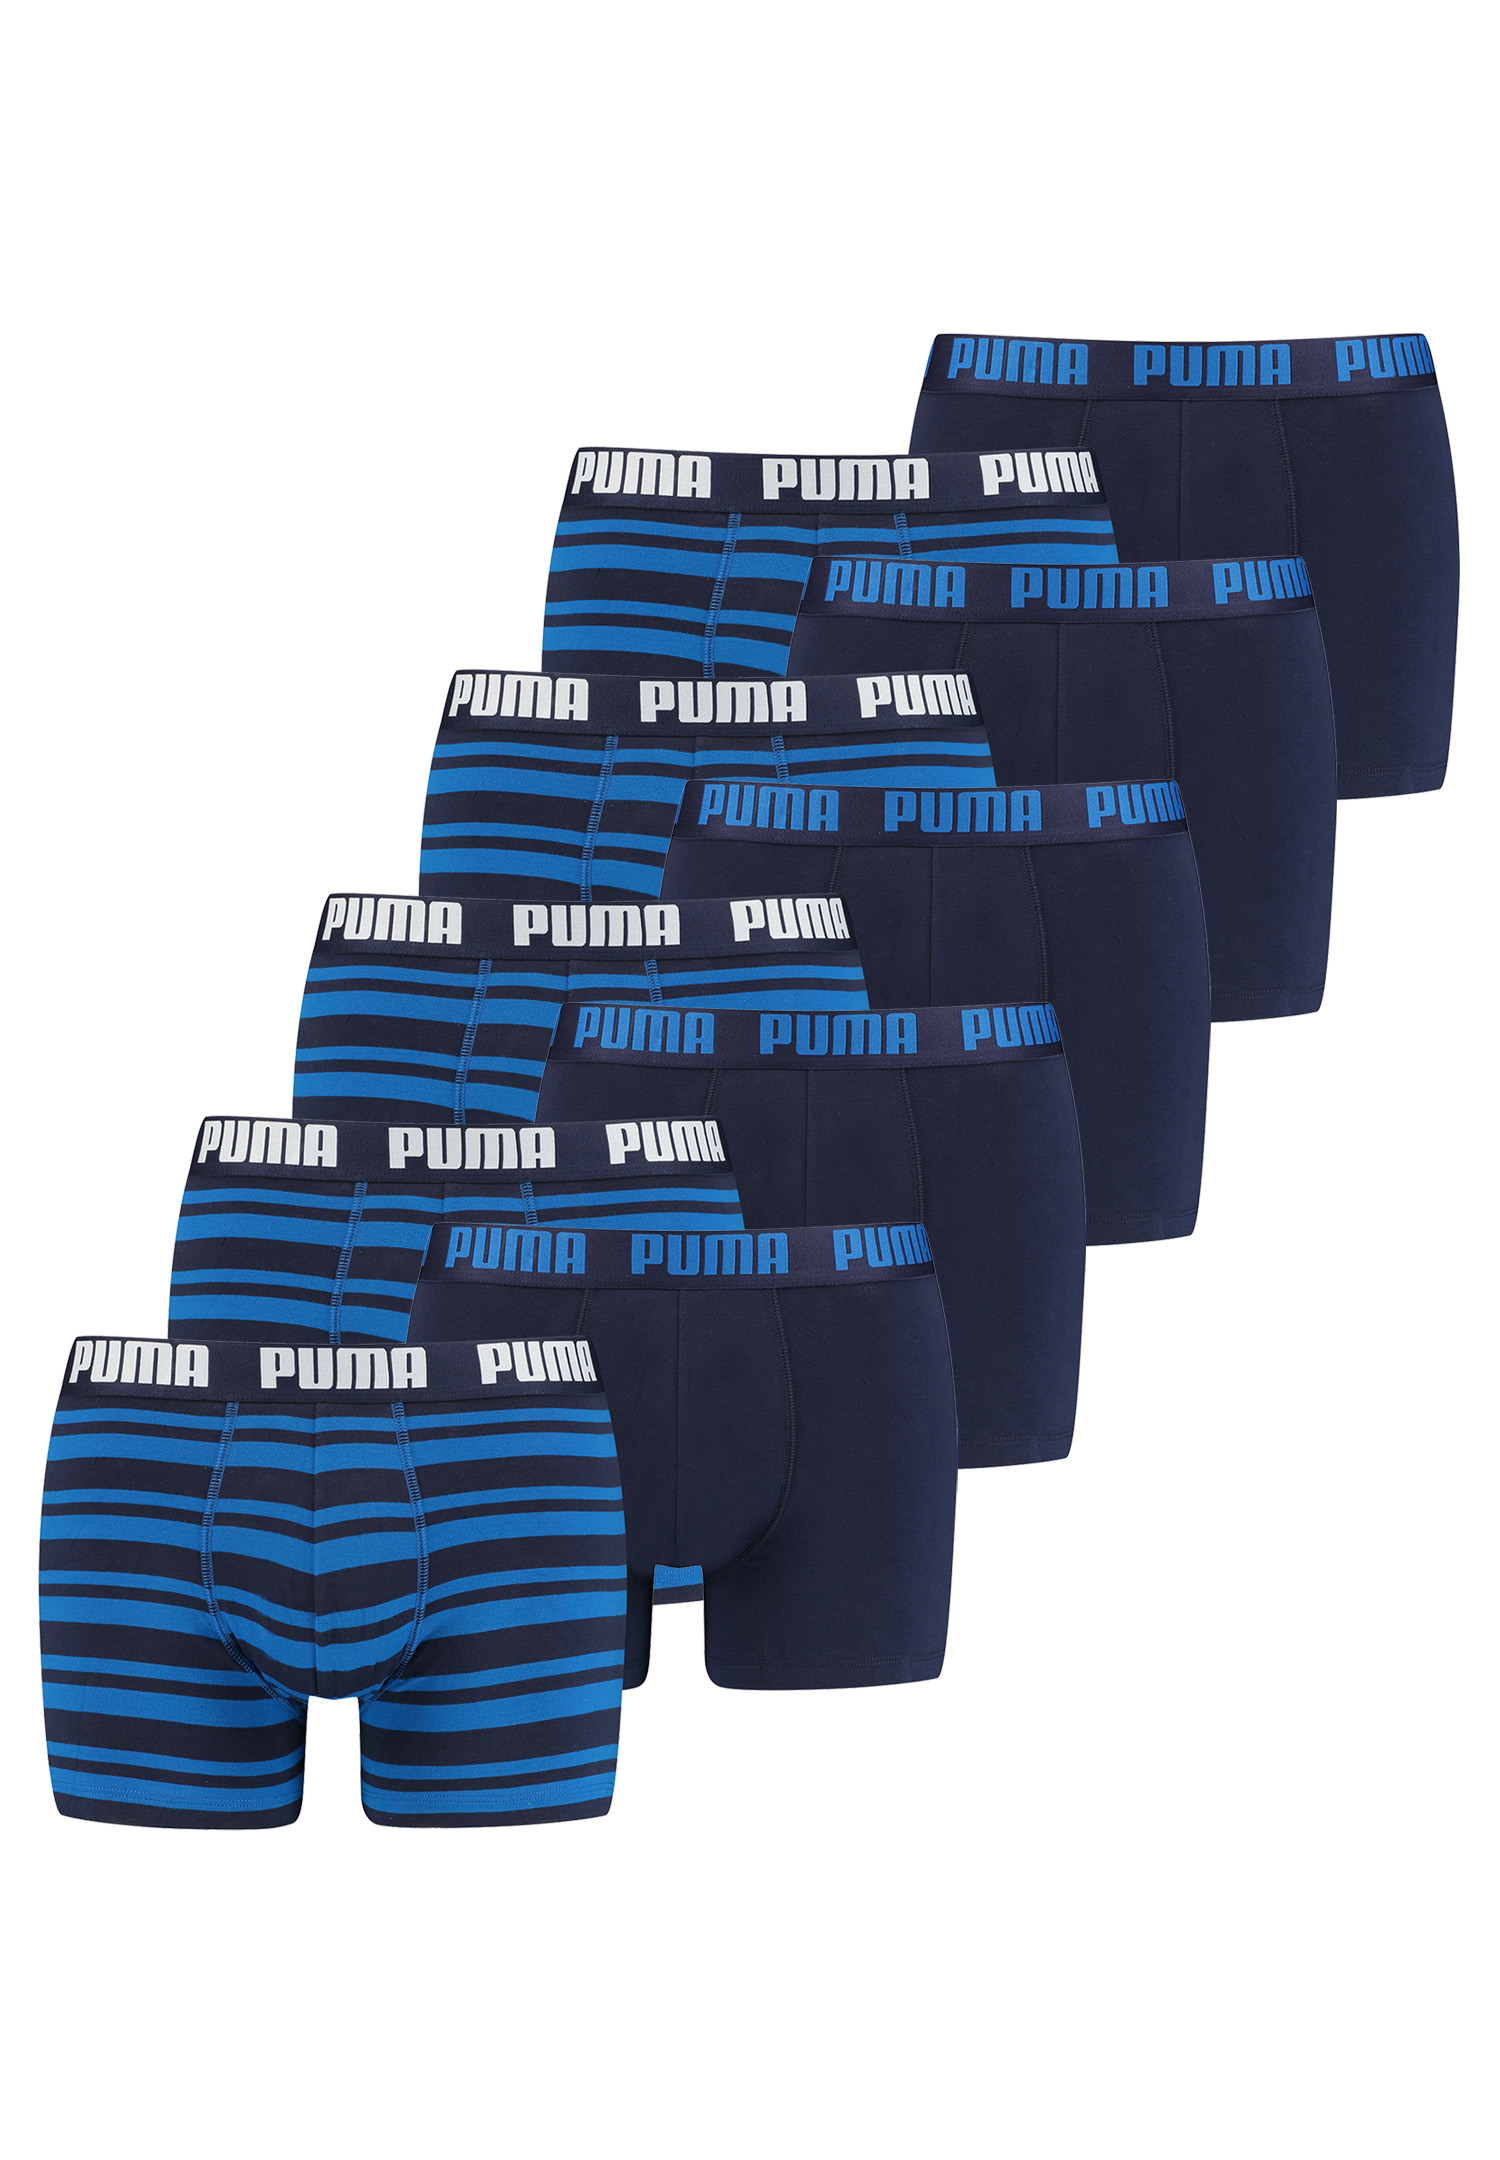 10 er Pack Puma Boxer Boxershorts Men Herren Unterhose Pant Unterwäsche